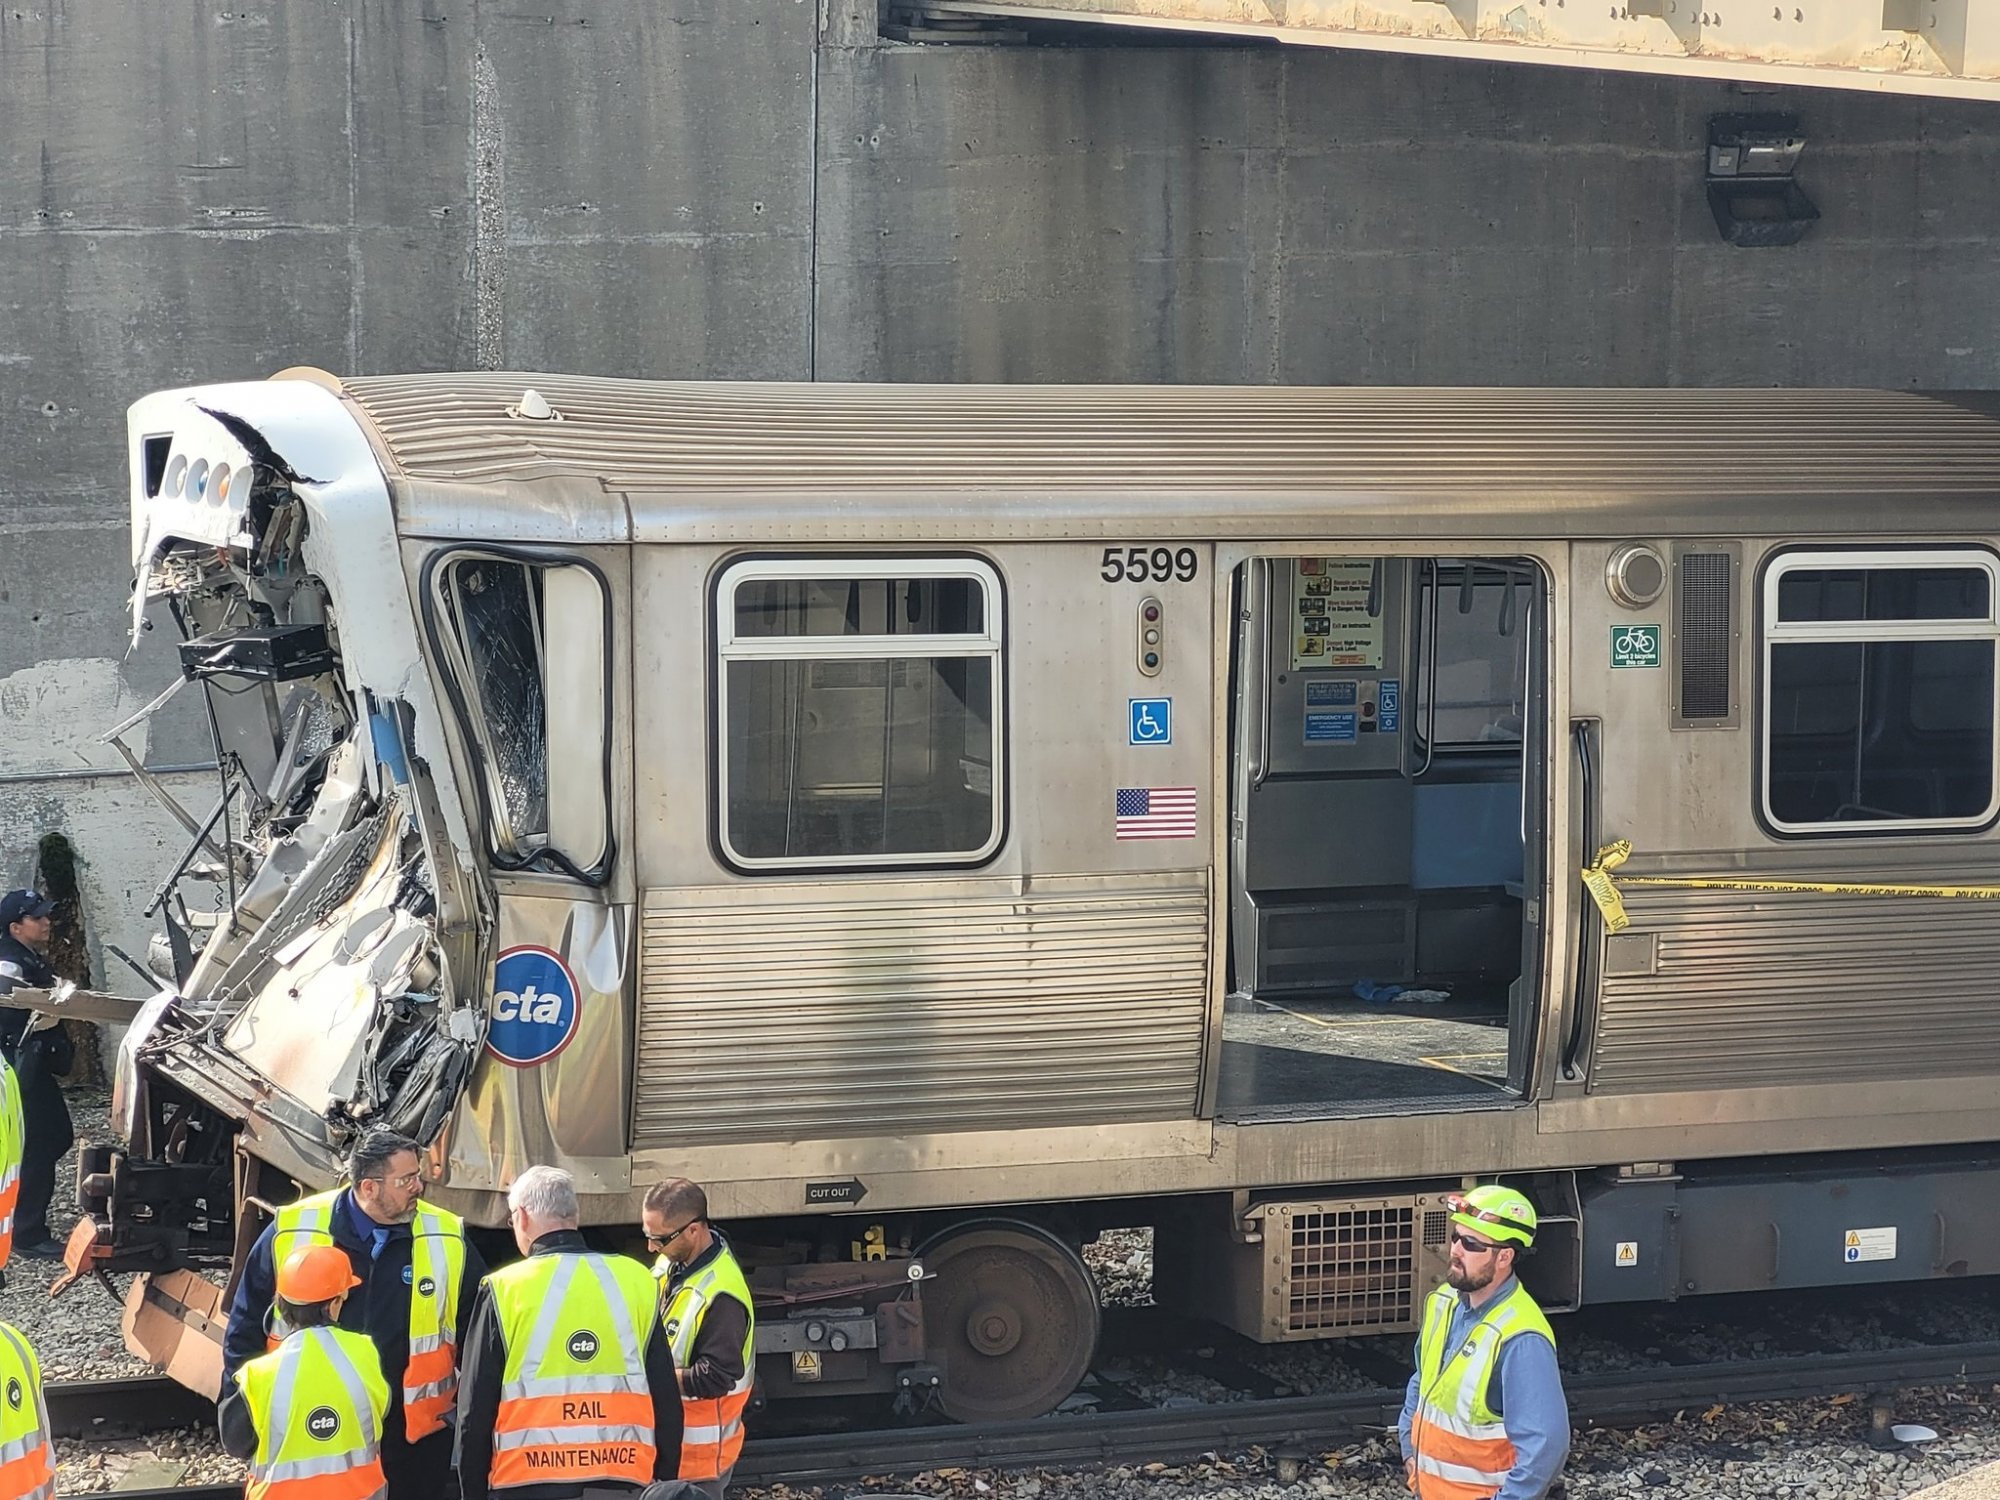 ΗΠΑ: Σιδηροδρομικό ατύχημα σοκ στο Σικάγο - 38 τραυματίες